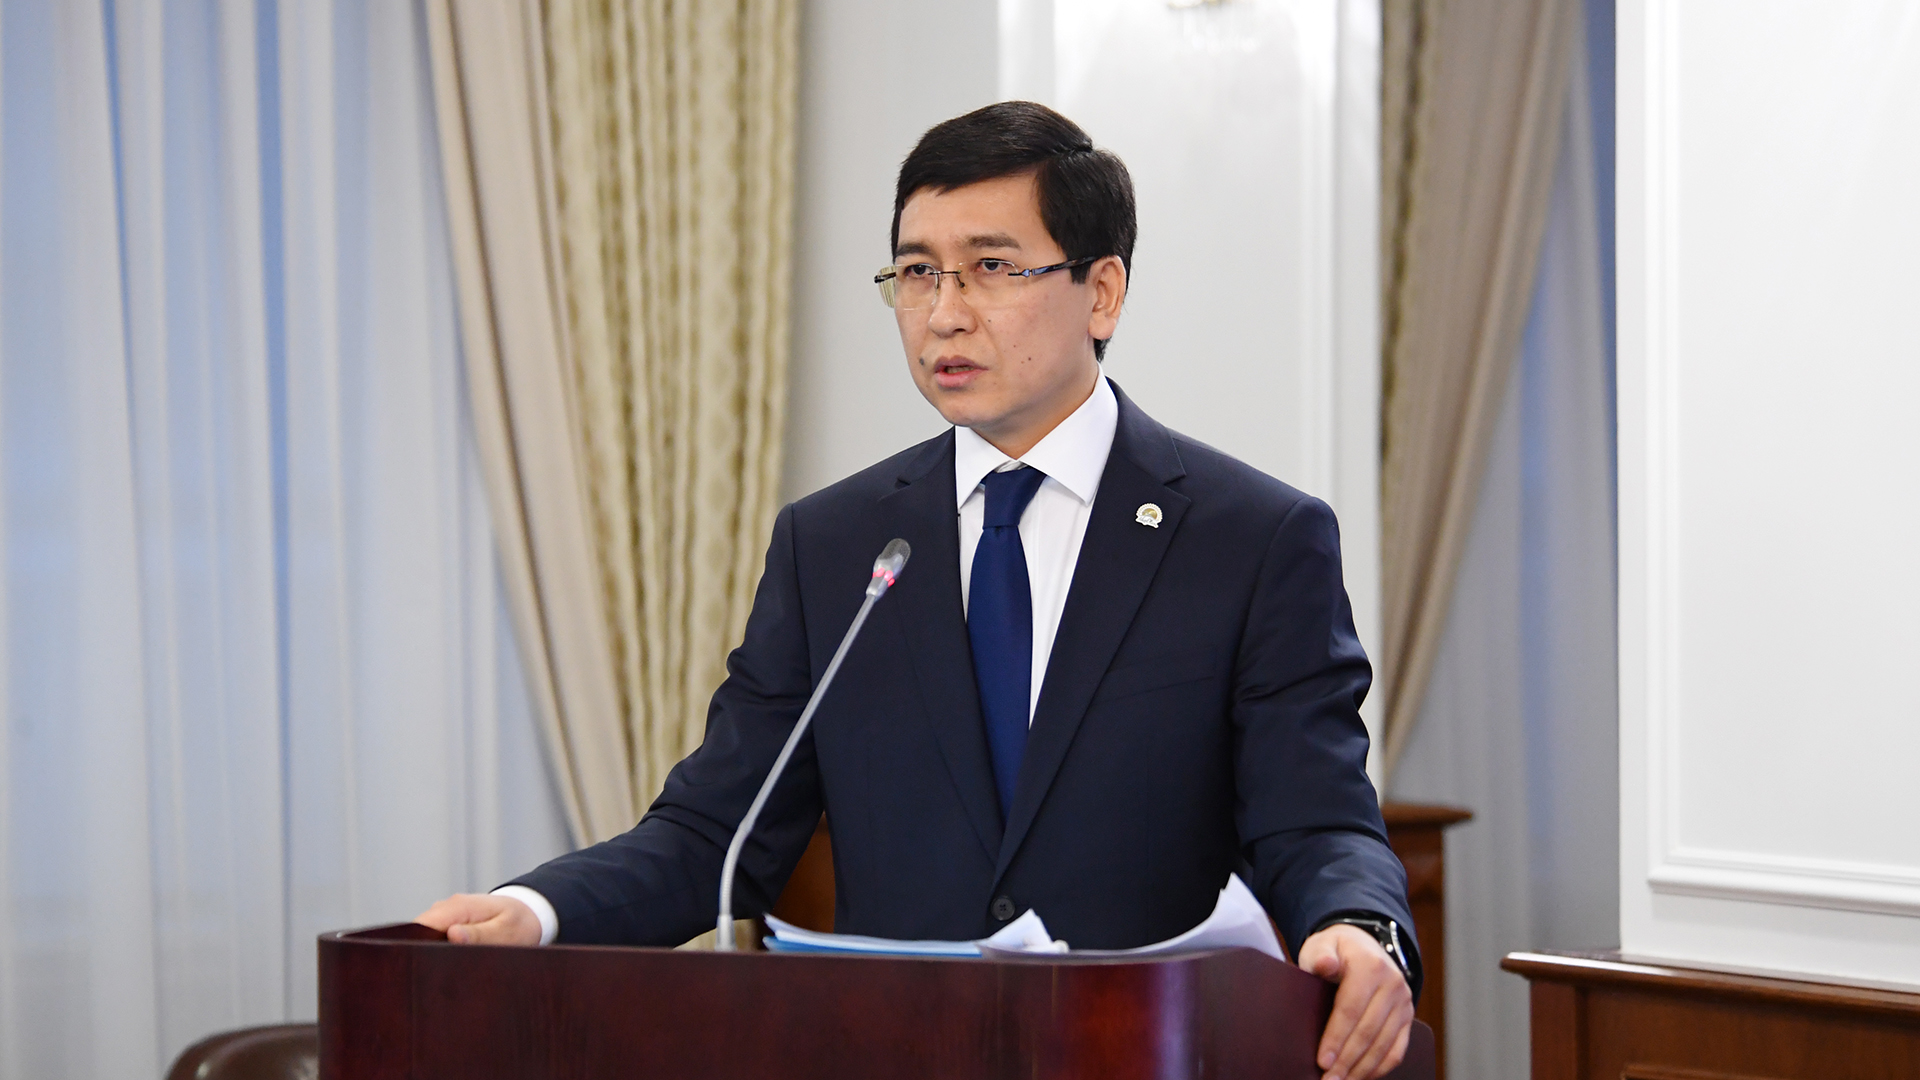 С 2010 по 2020 годы в Казахстане будет действовать национальная программа развития образования и науки